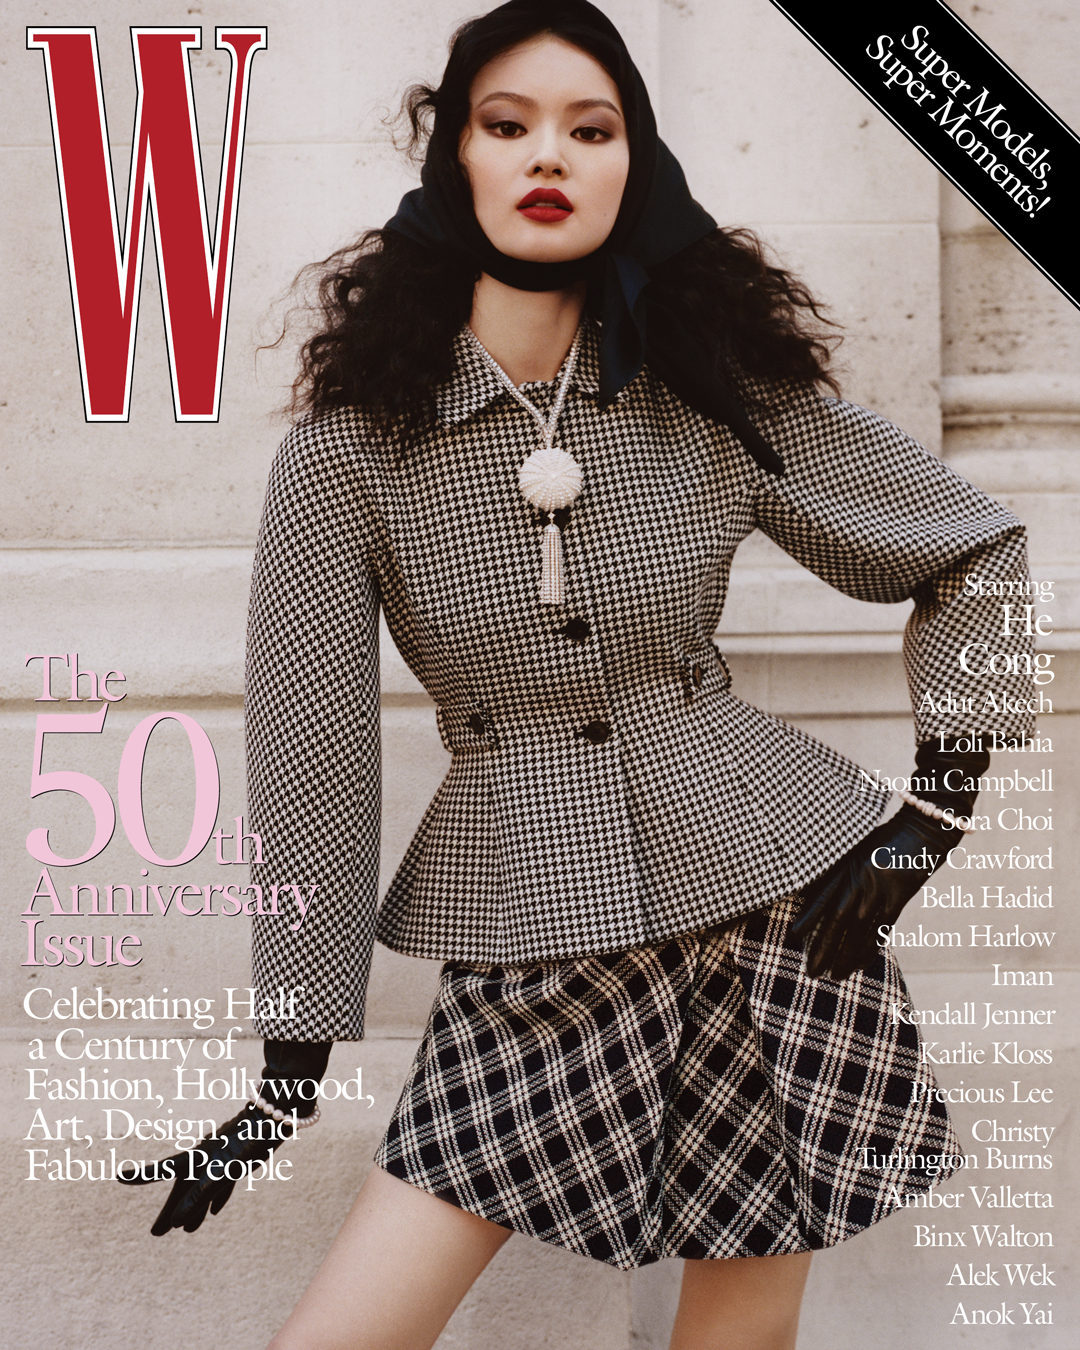 Белла Хадід, Наомі Кемпбелл та ще 15 супермоделей на обкладинках ювілейного W Magazine